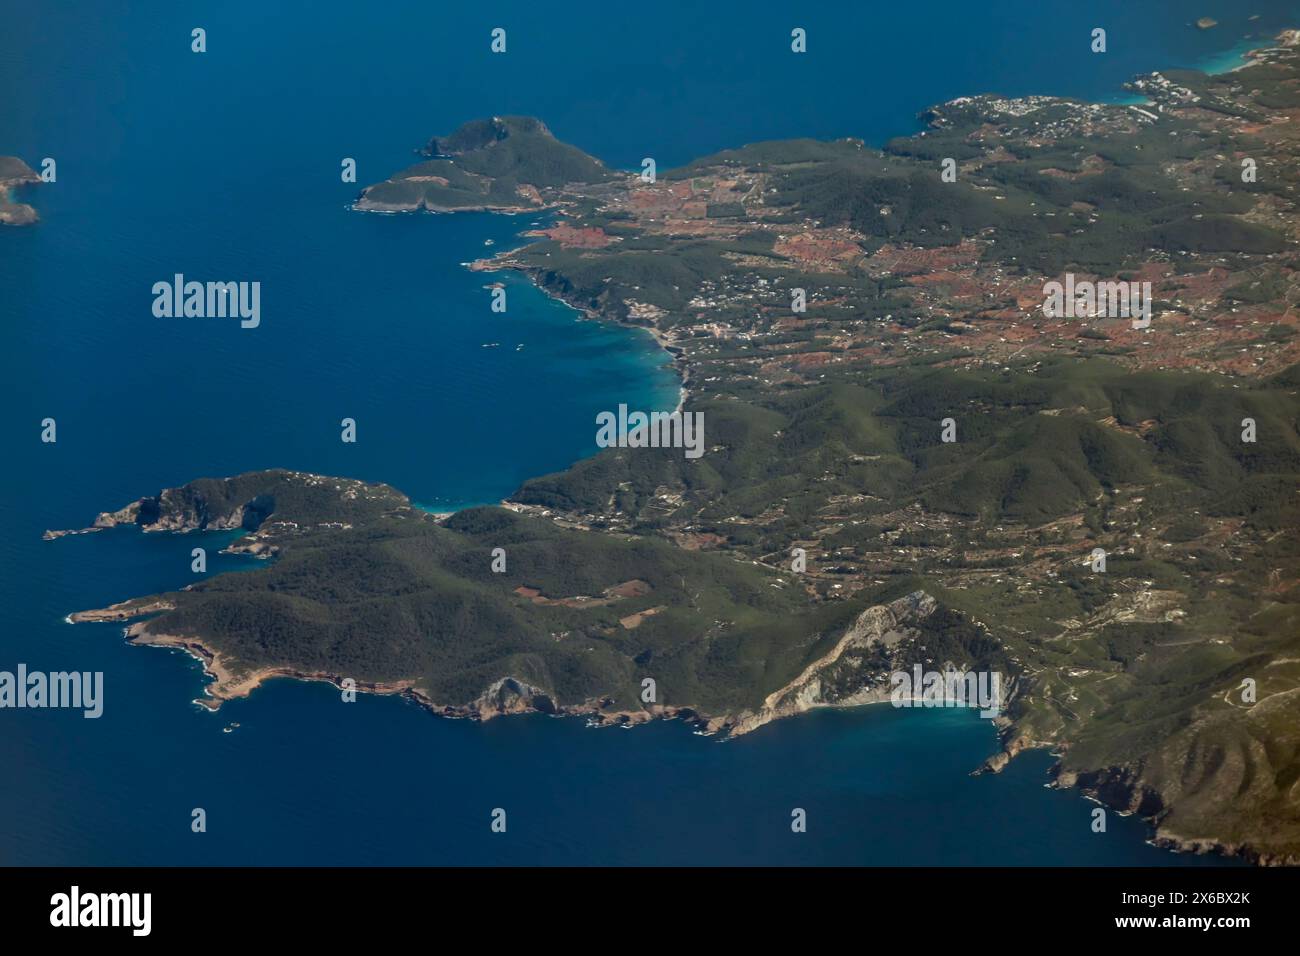 Vue aérienne panoramique sur le nord-est de l'île d'Ibiza, les îles Baléares, l'Espagne, Sant Vicent de sa Cala et ses environs Banque D'Images